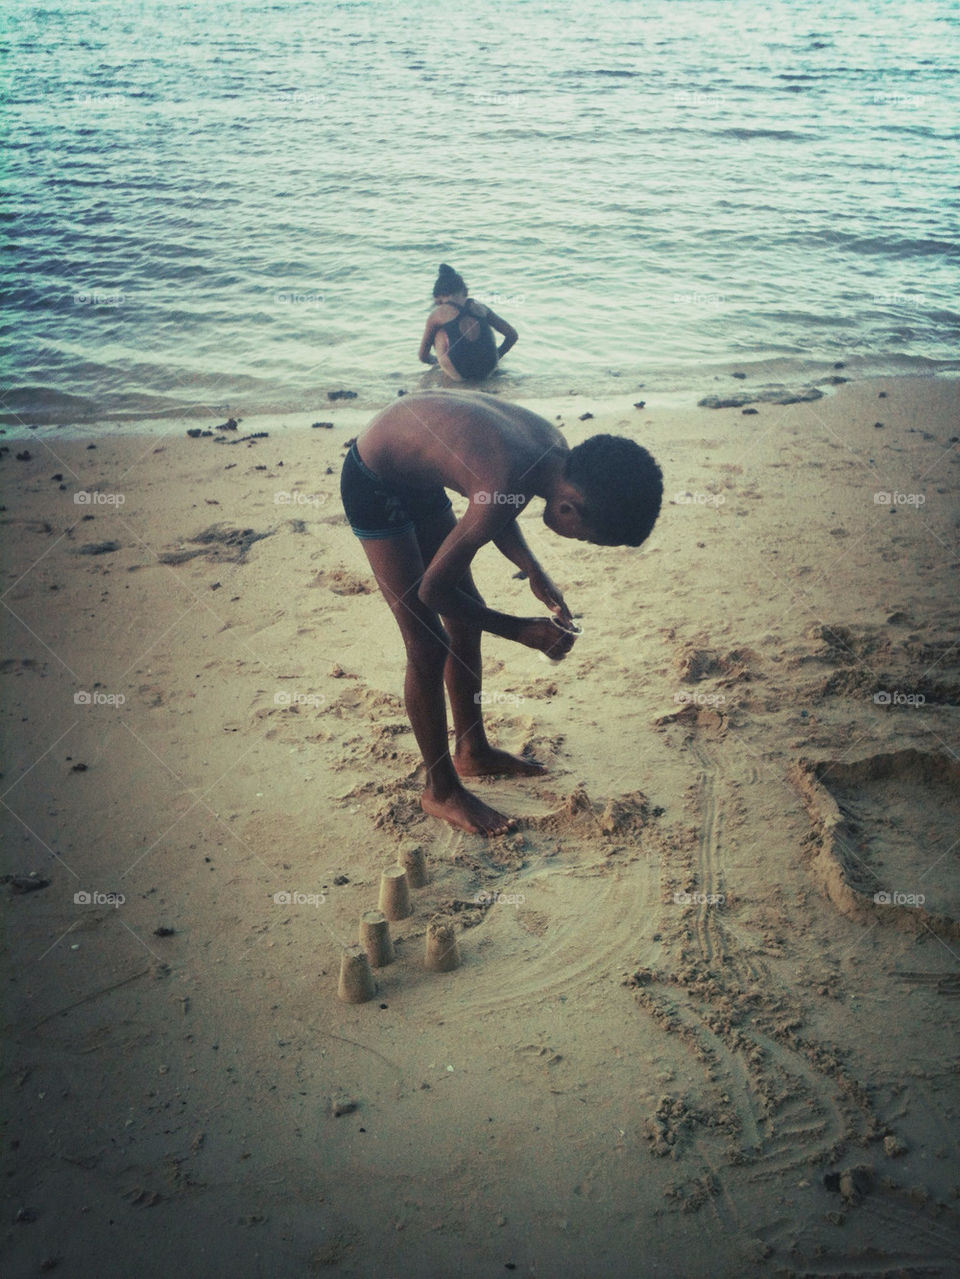 Boy building sandcastles on the beach.